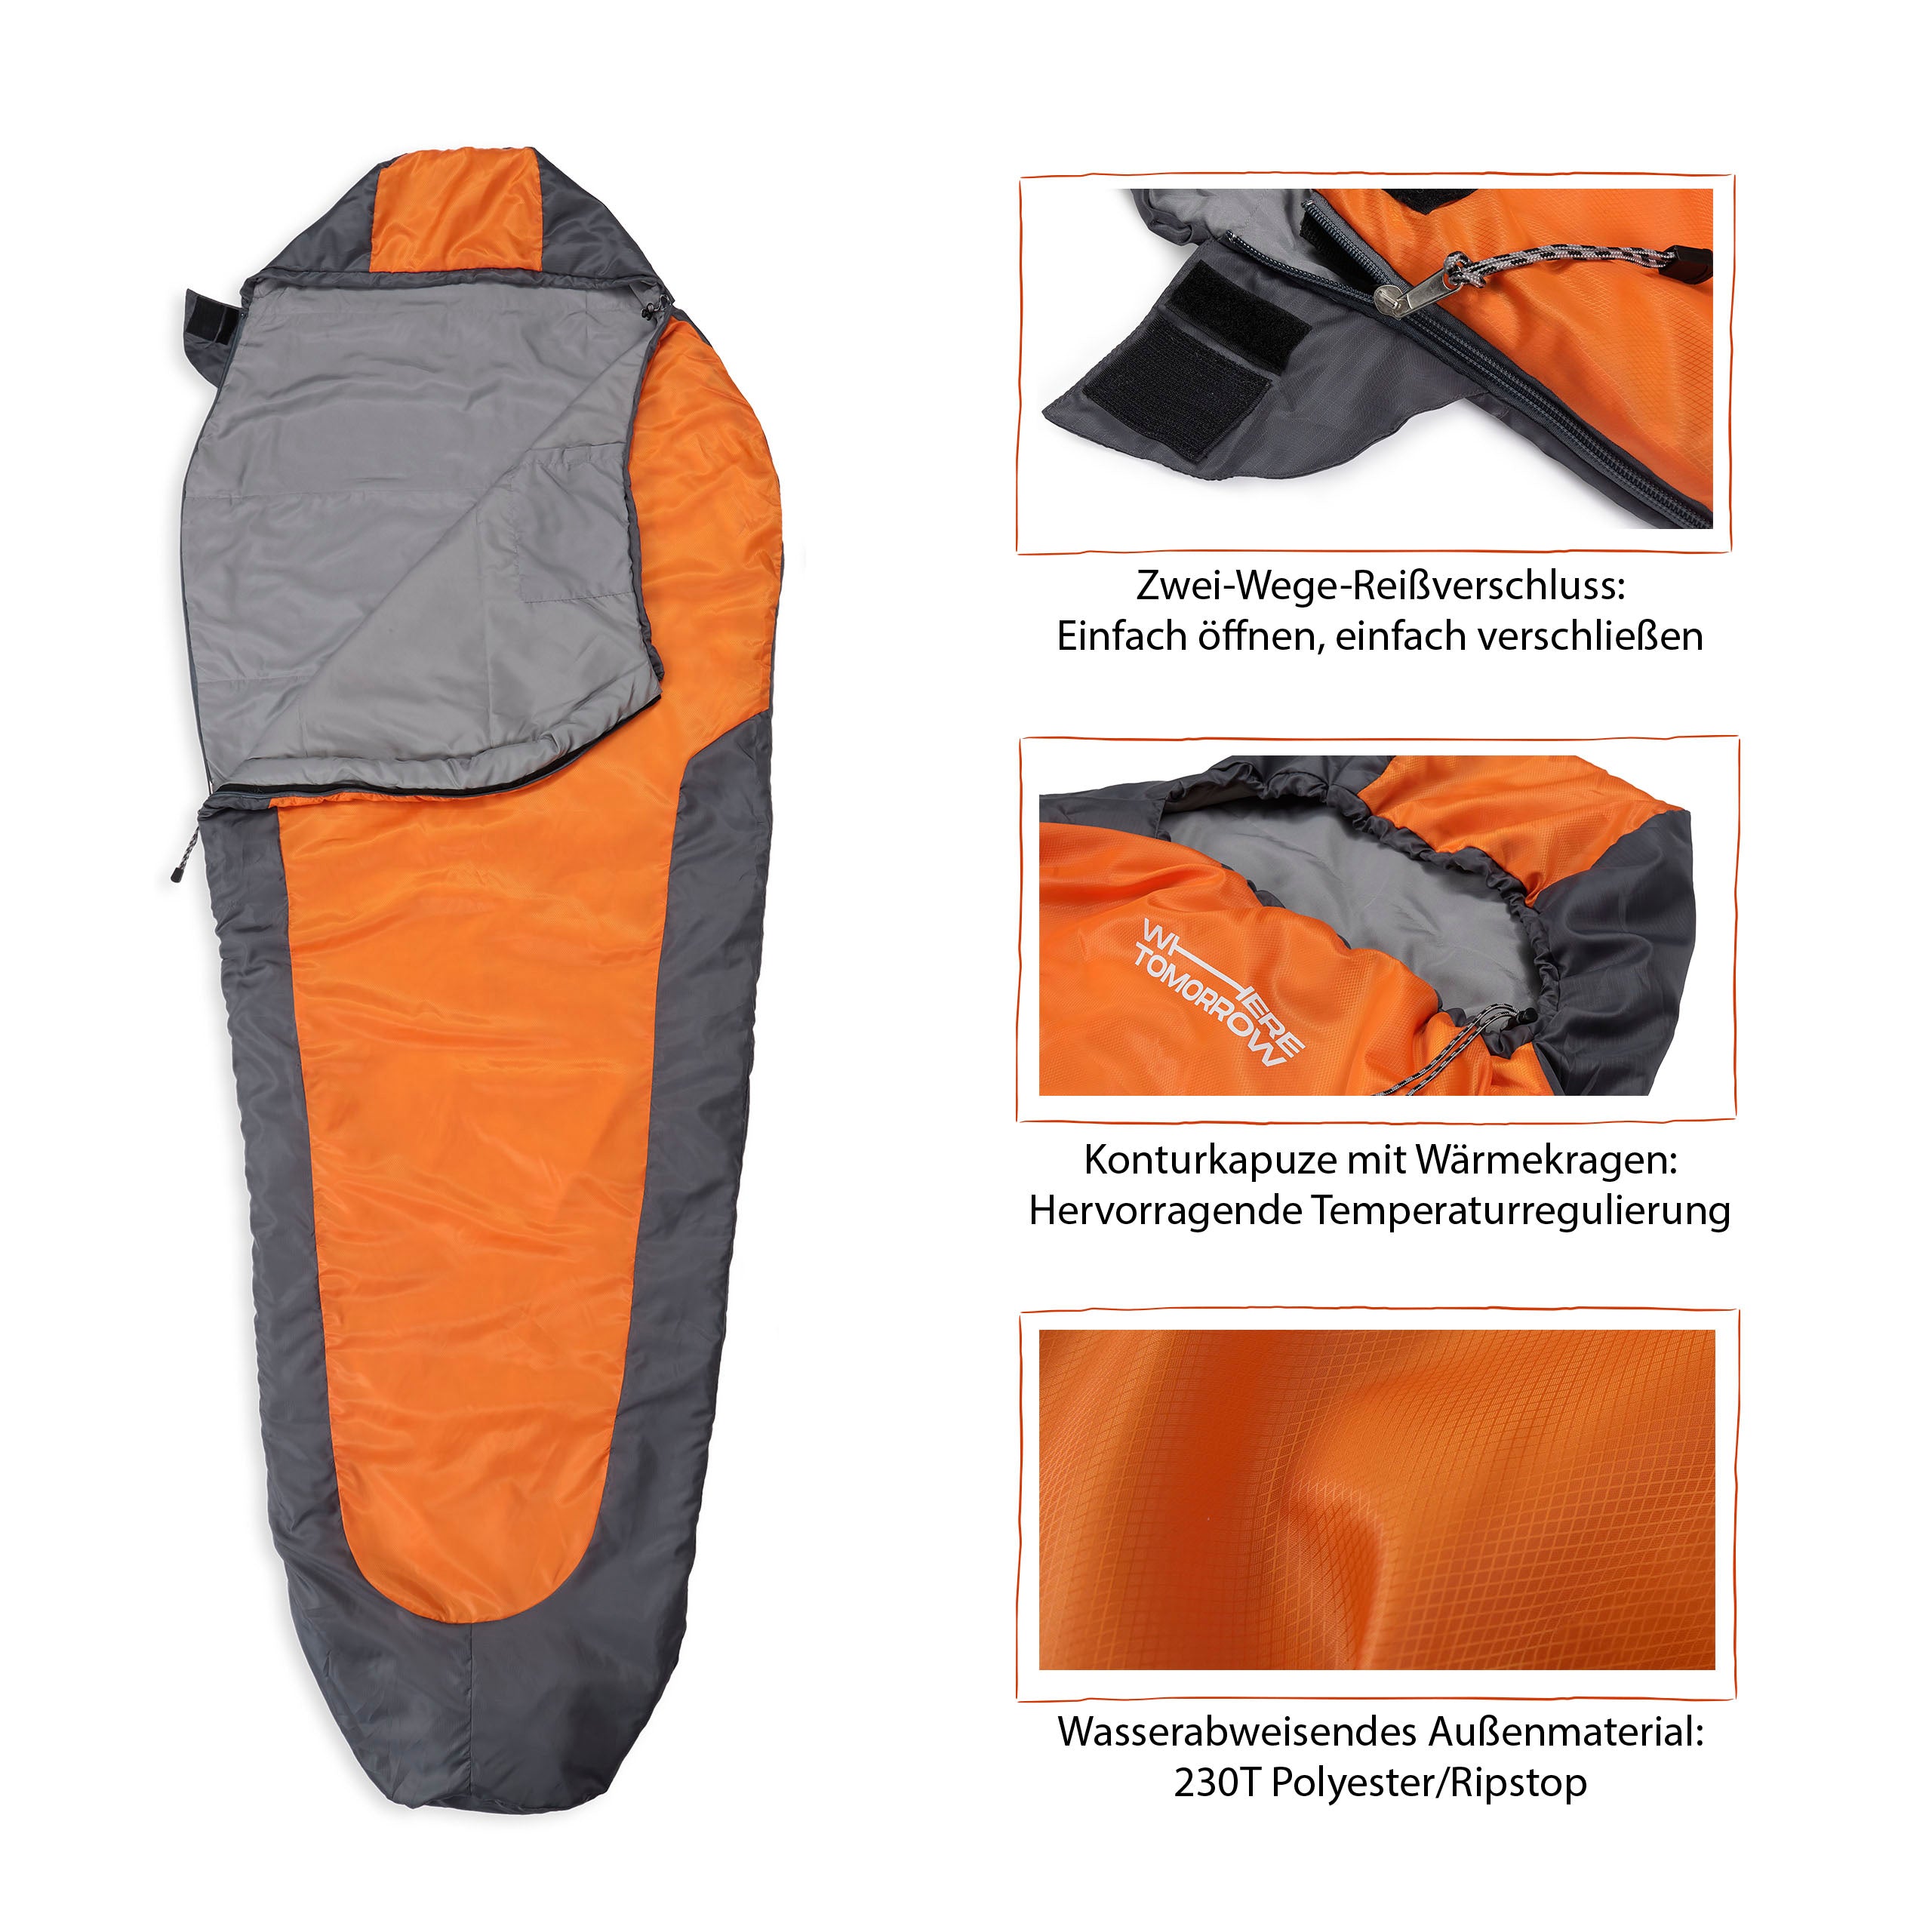 Camping Schlafsack Small & Light - Mumienschlafsack mit Tasche - 220 x 80 x 50 cm - Orange-Grau